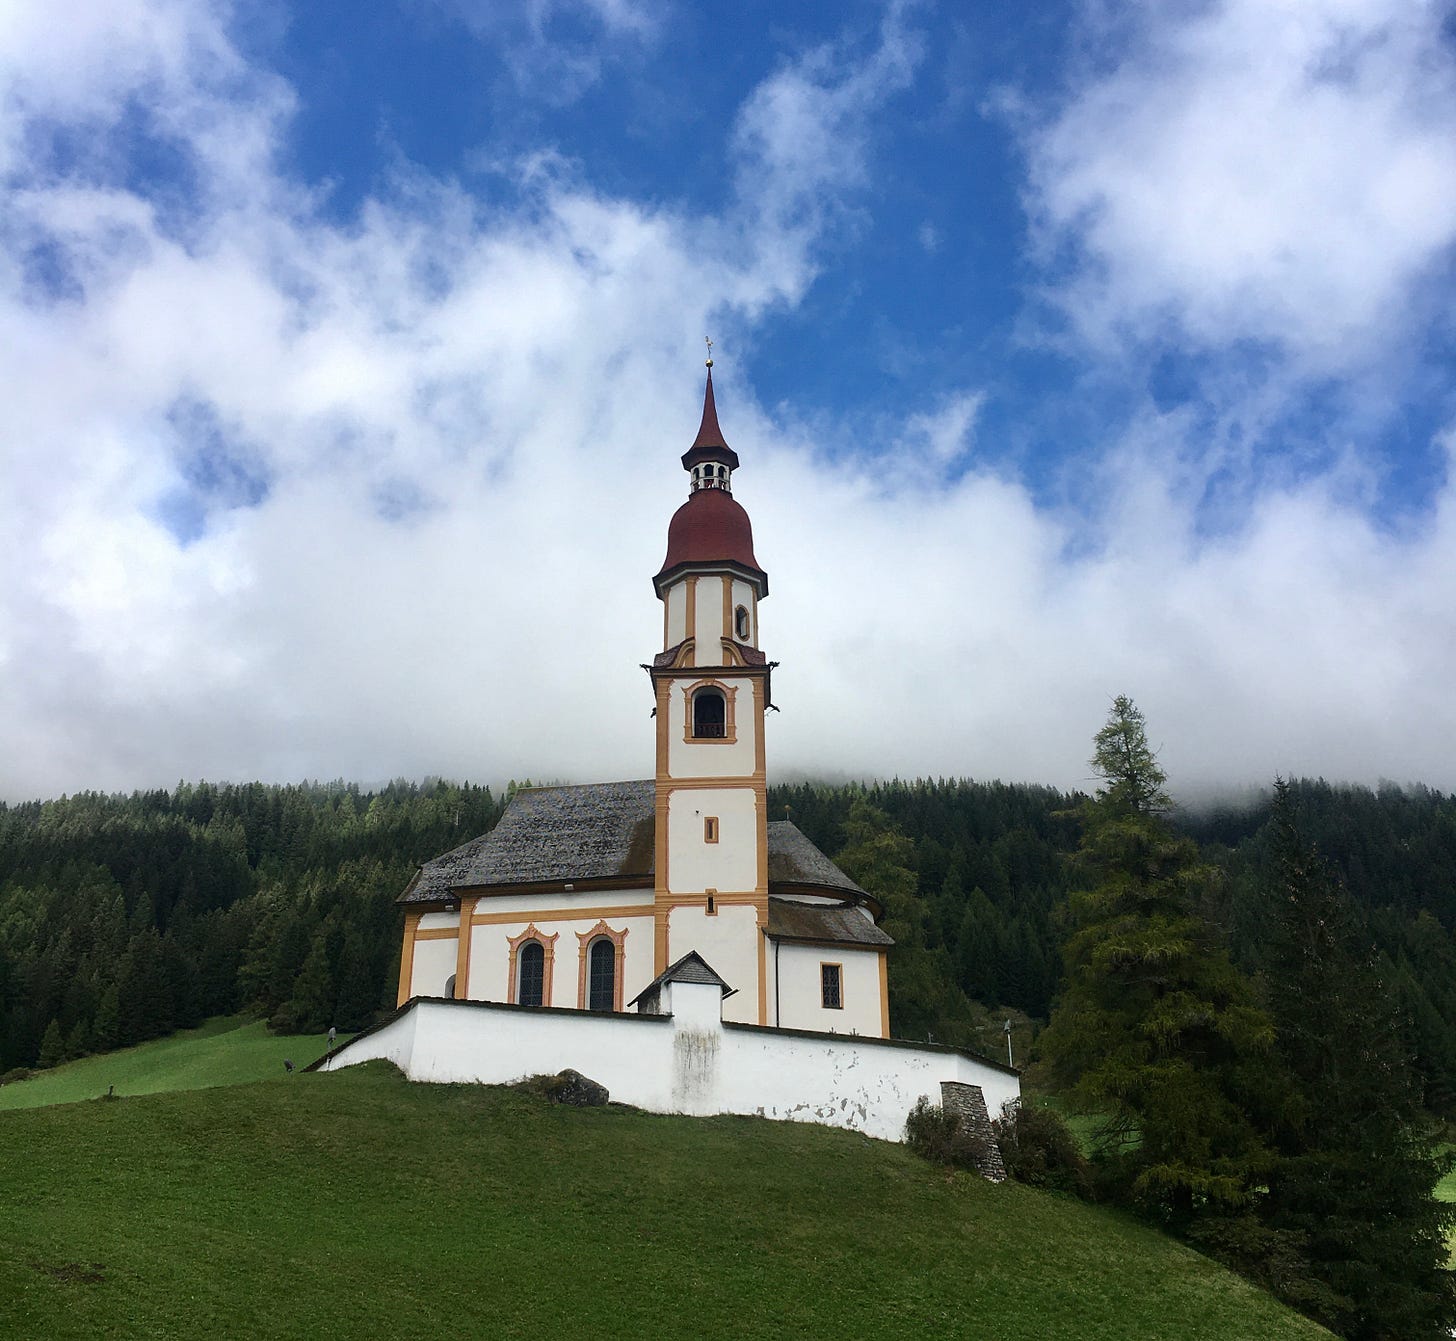 Eine Kapelle mit rotem Turm-Dach auf einem Hügel vor Wald, der Himmel ist blau mit Wolken